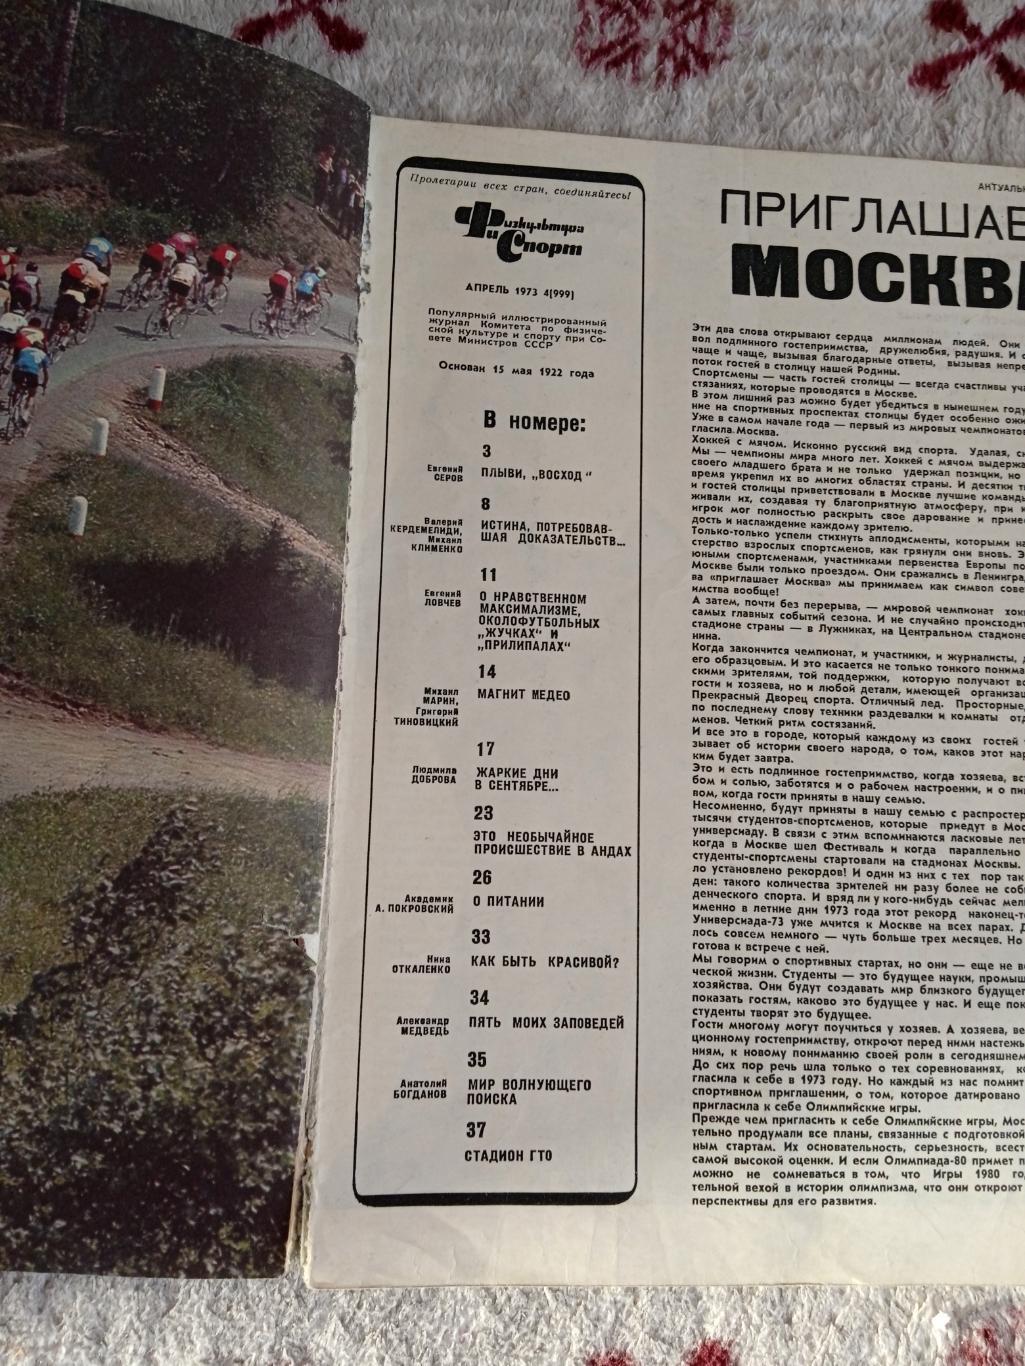 Журнал.Физкультура и спорт № 4 1973 г. (ФиС). 1